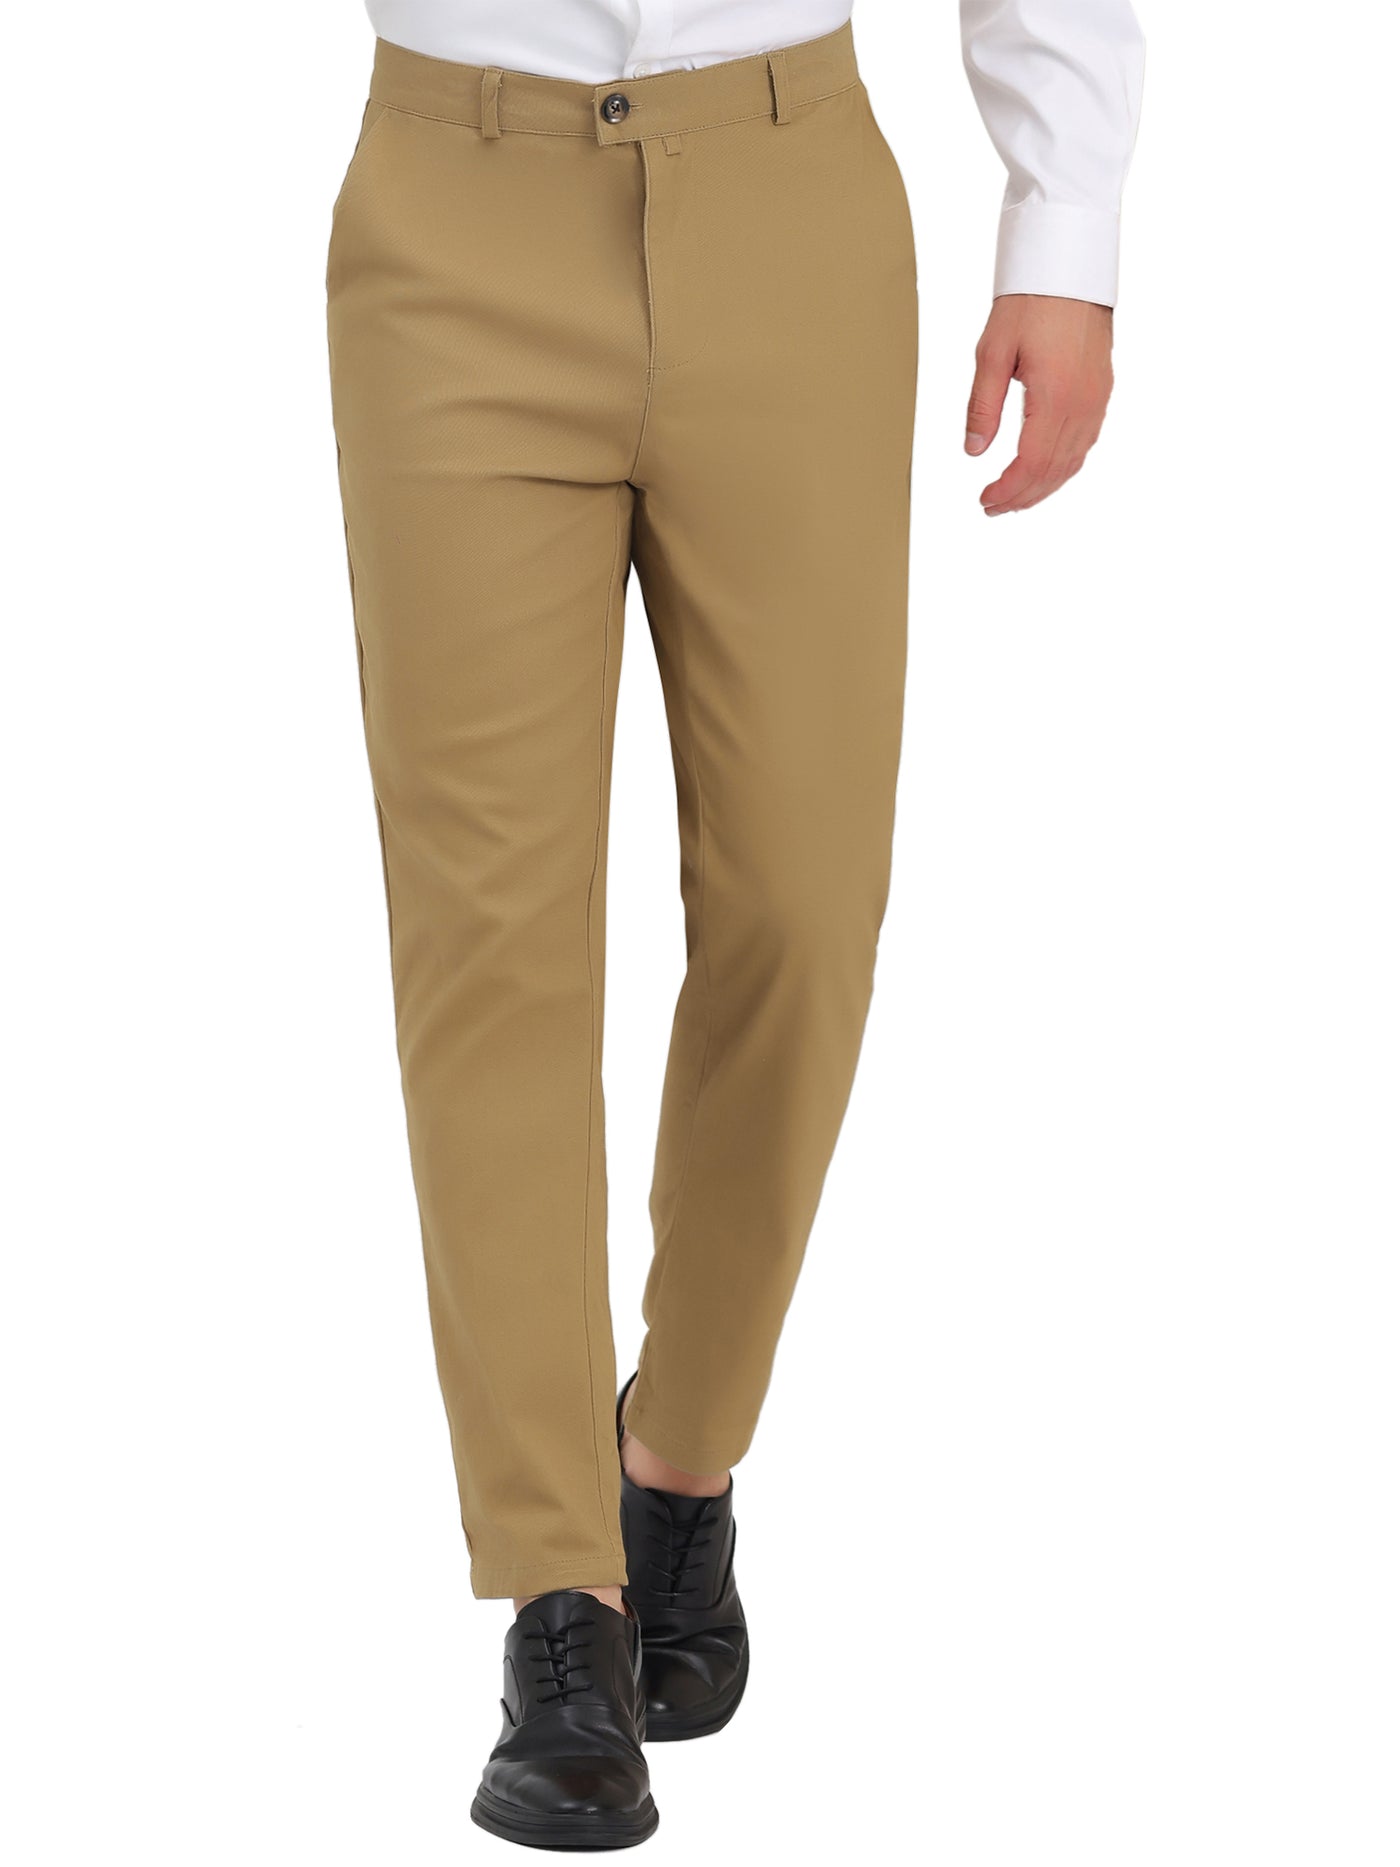 Bublédon Men's Dress Pants Flat Front Solid Classic Fit Business Prom Suit Trousers